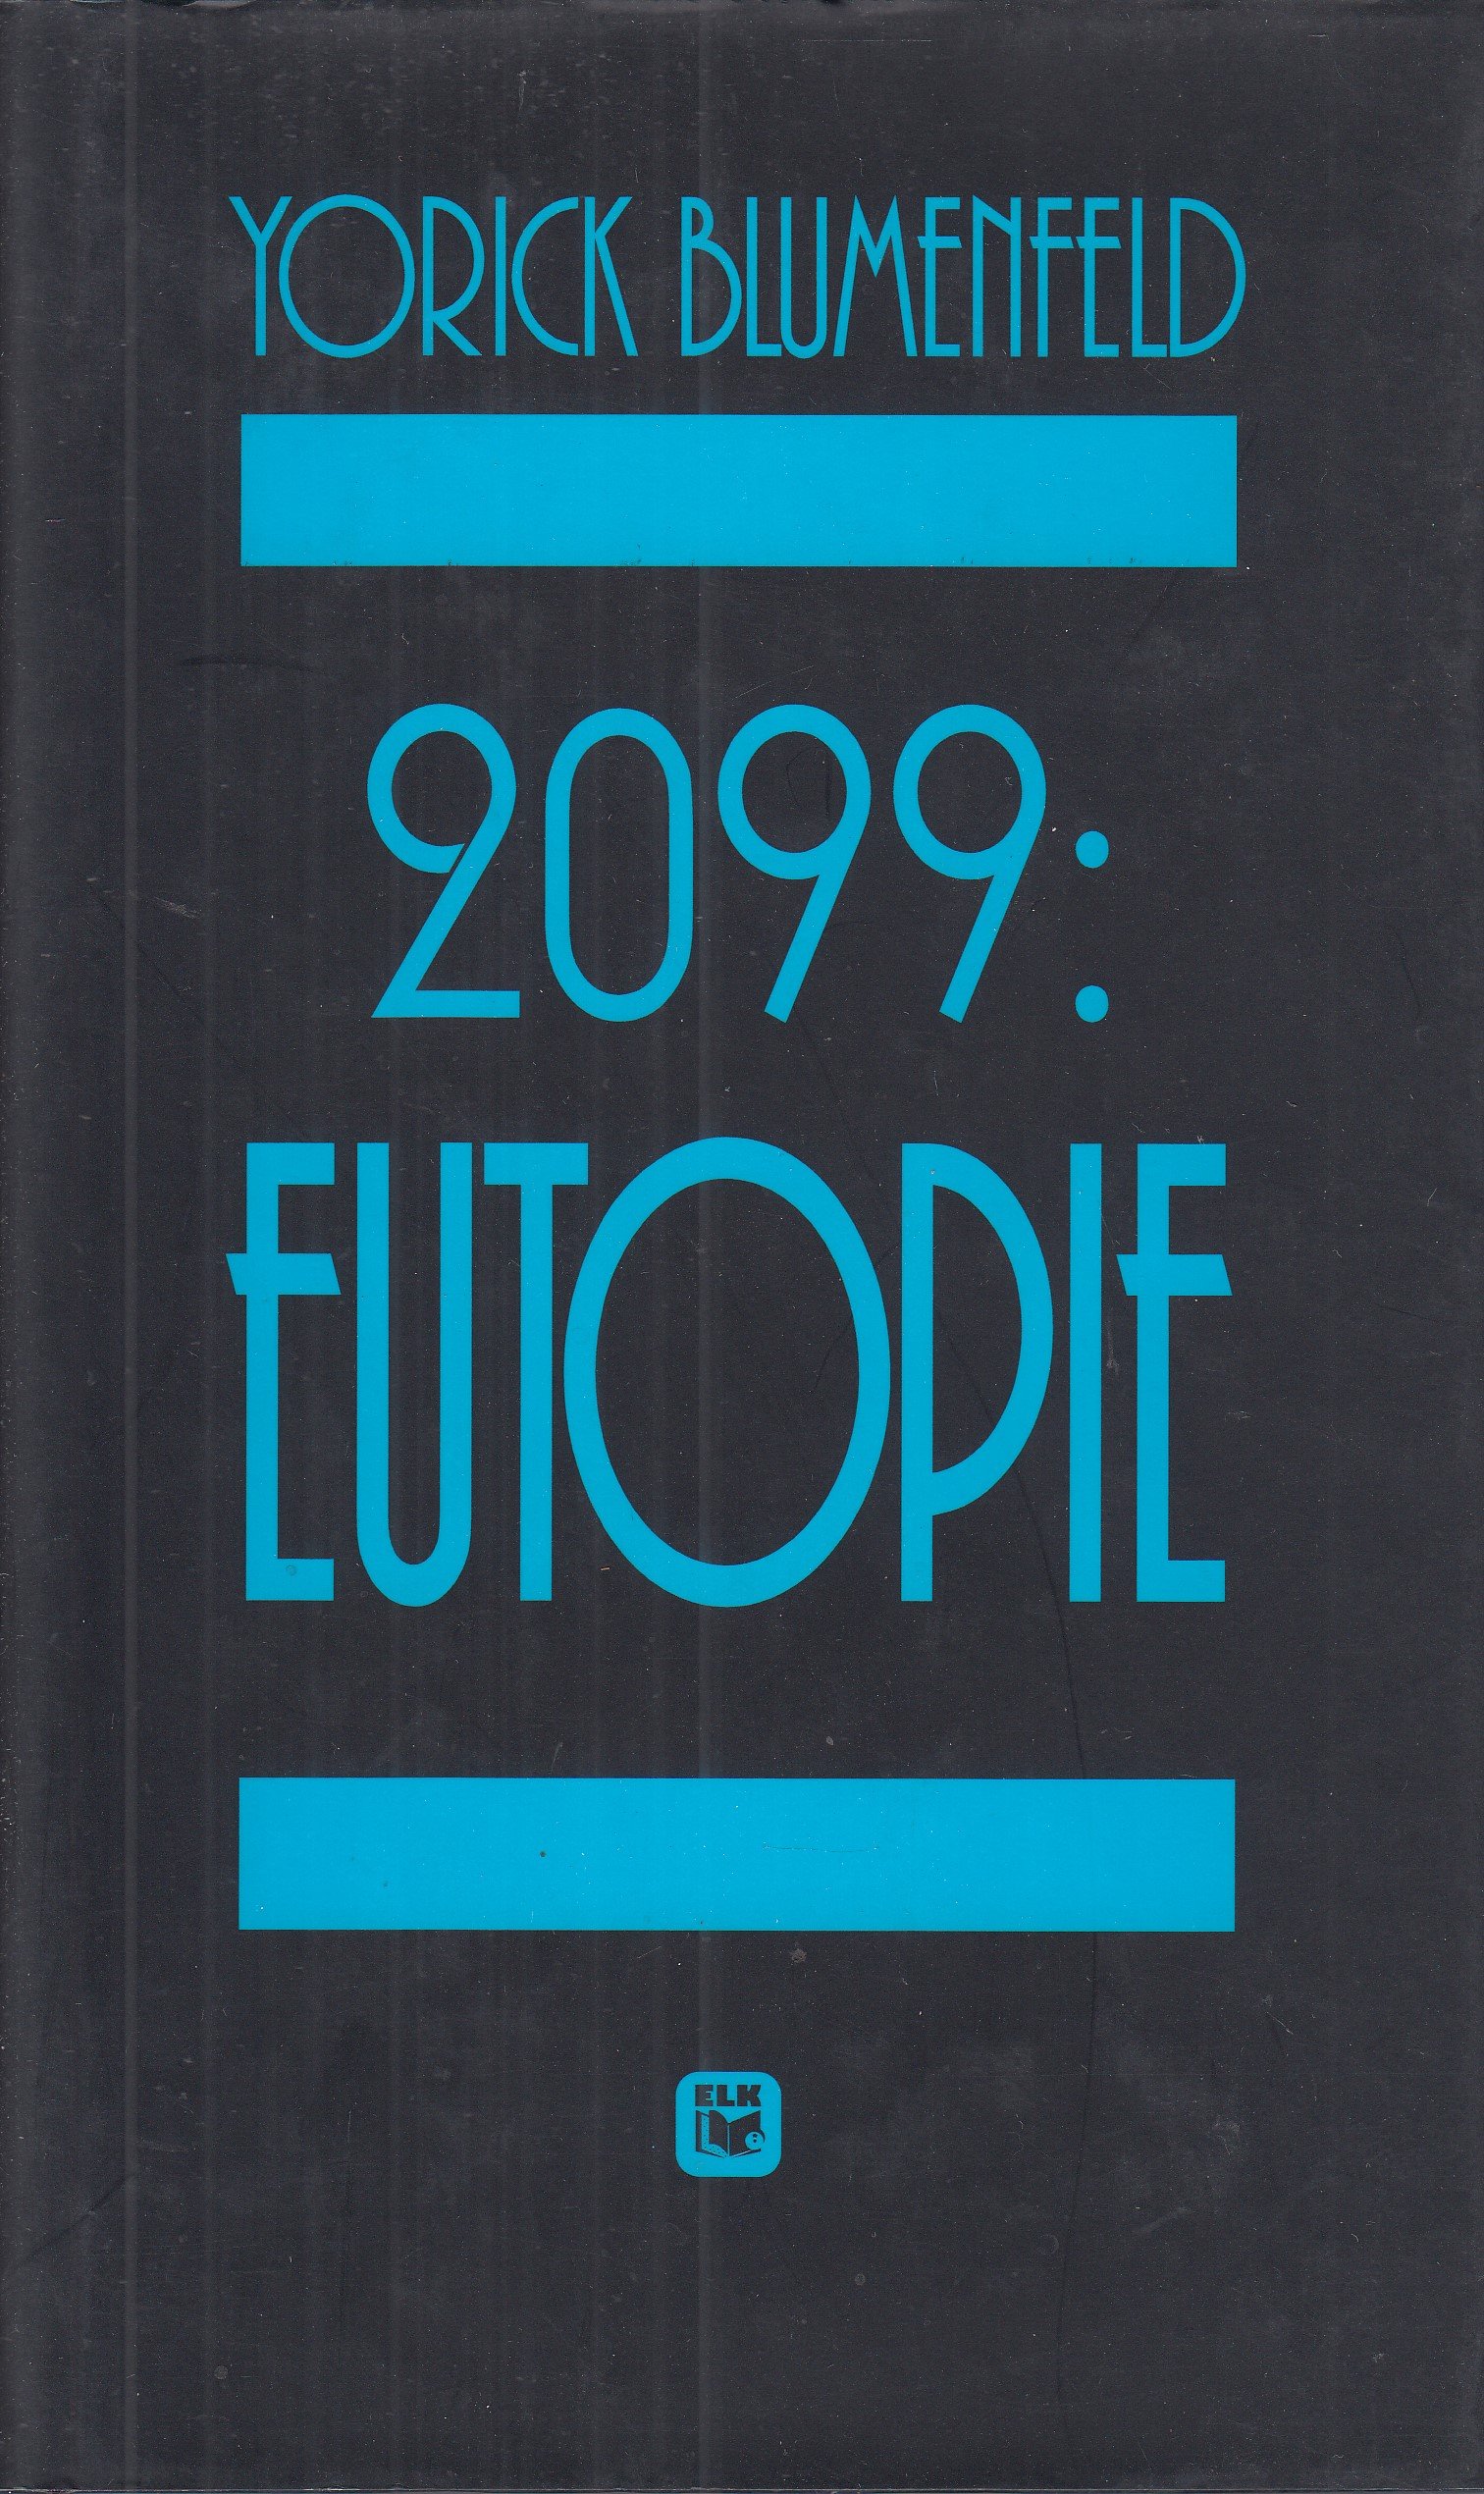 2099: Eutopie